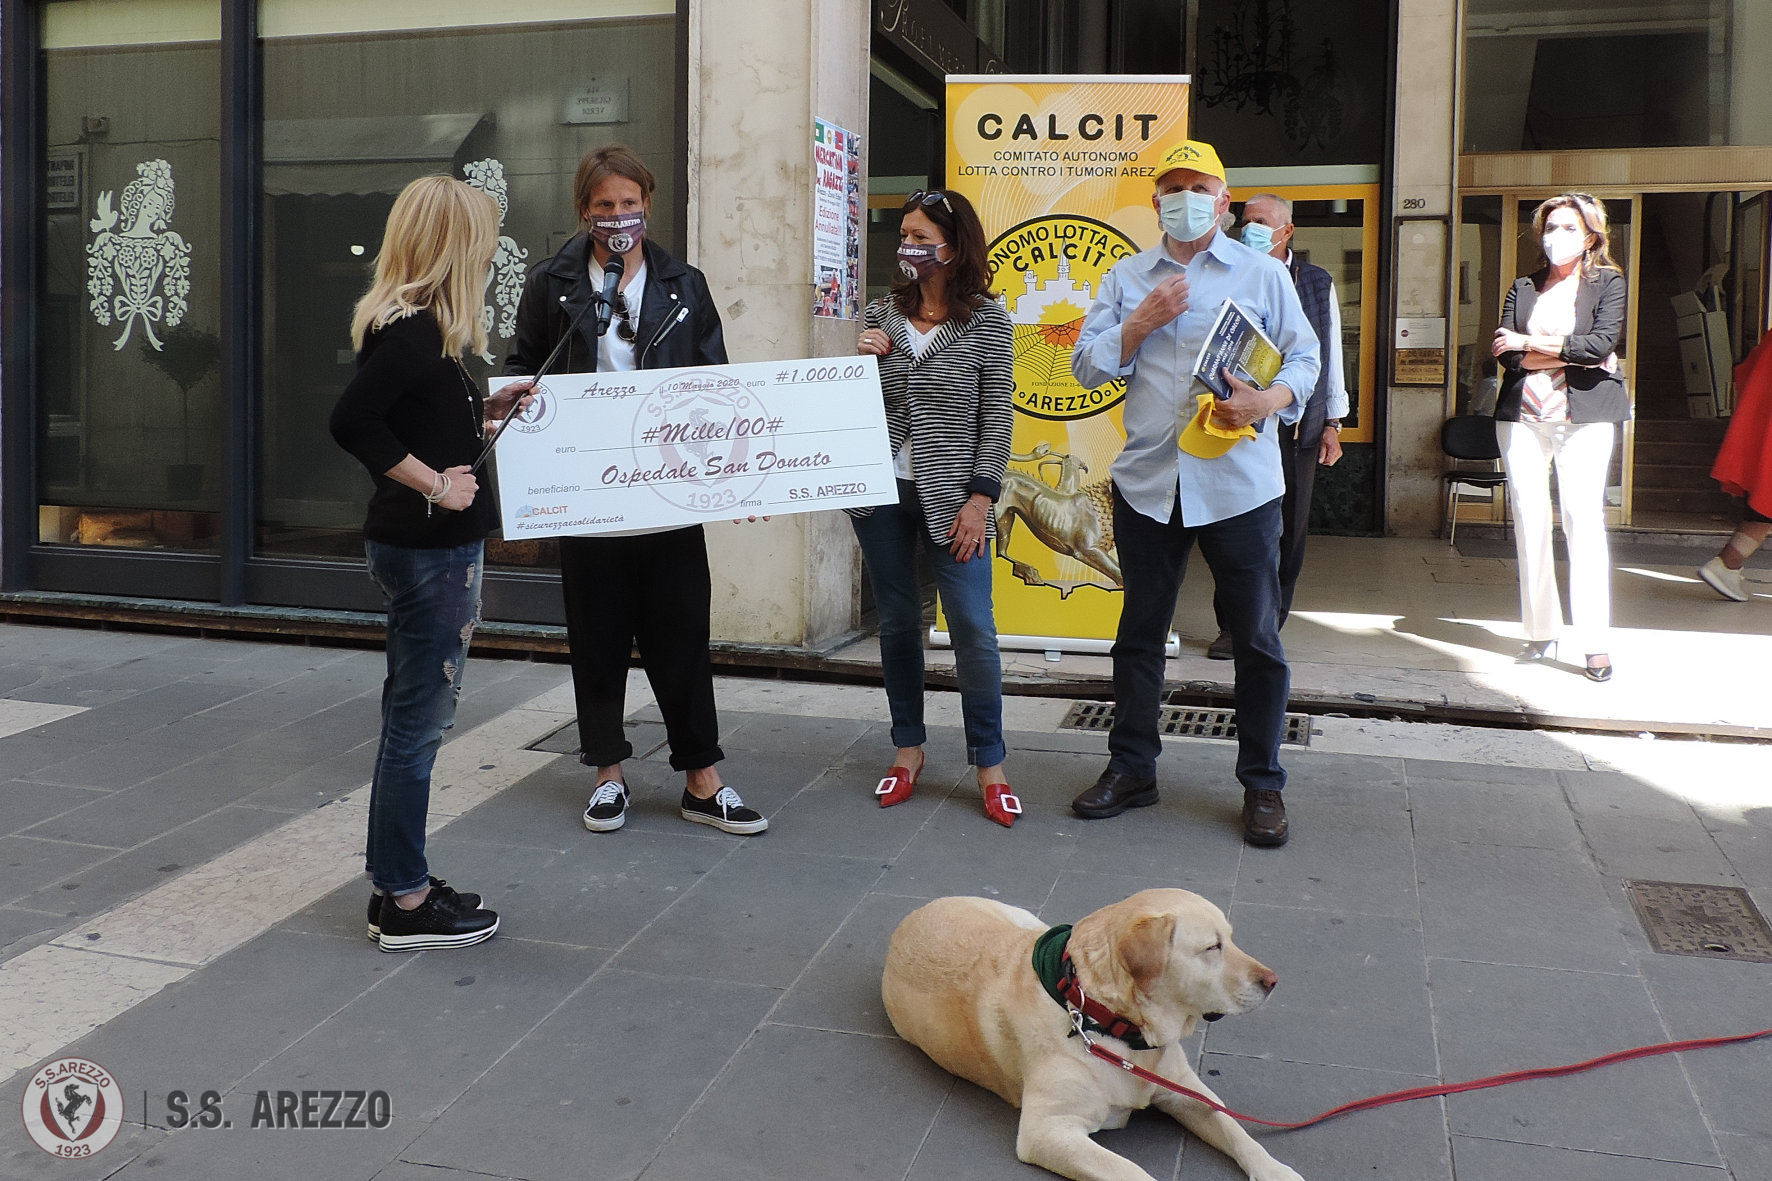 Ss Arezzo, consegnati al Calcit mille euro per il San Donato